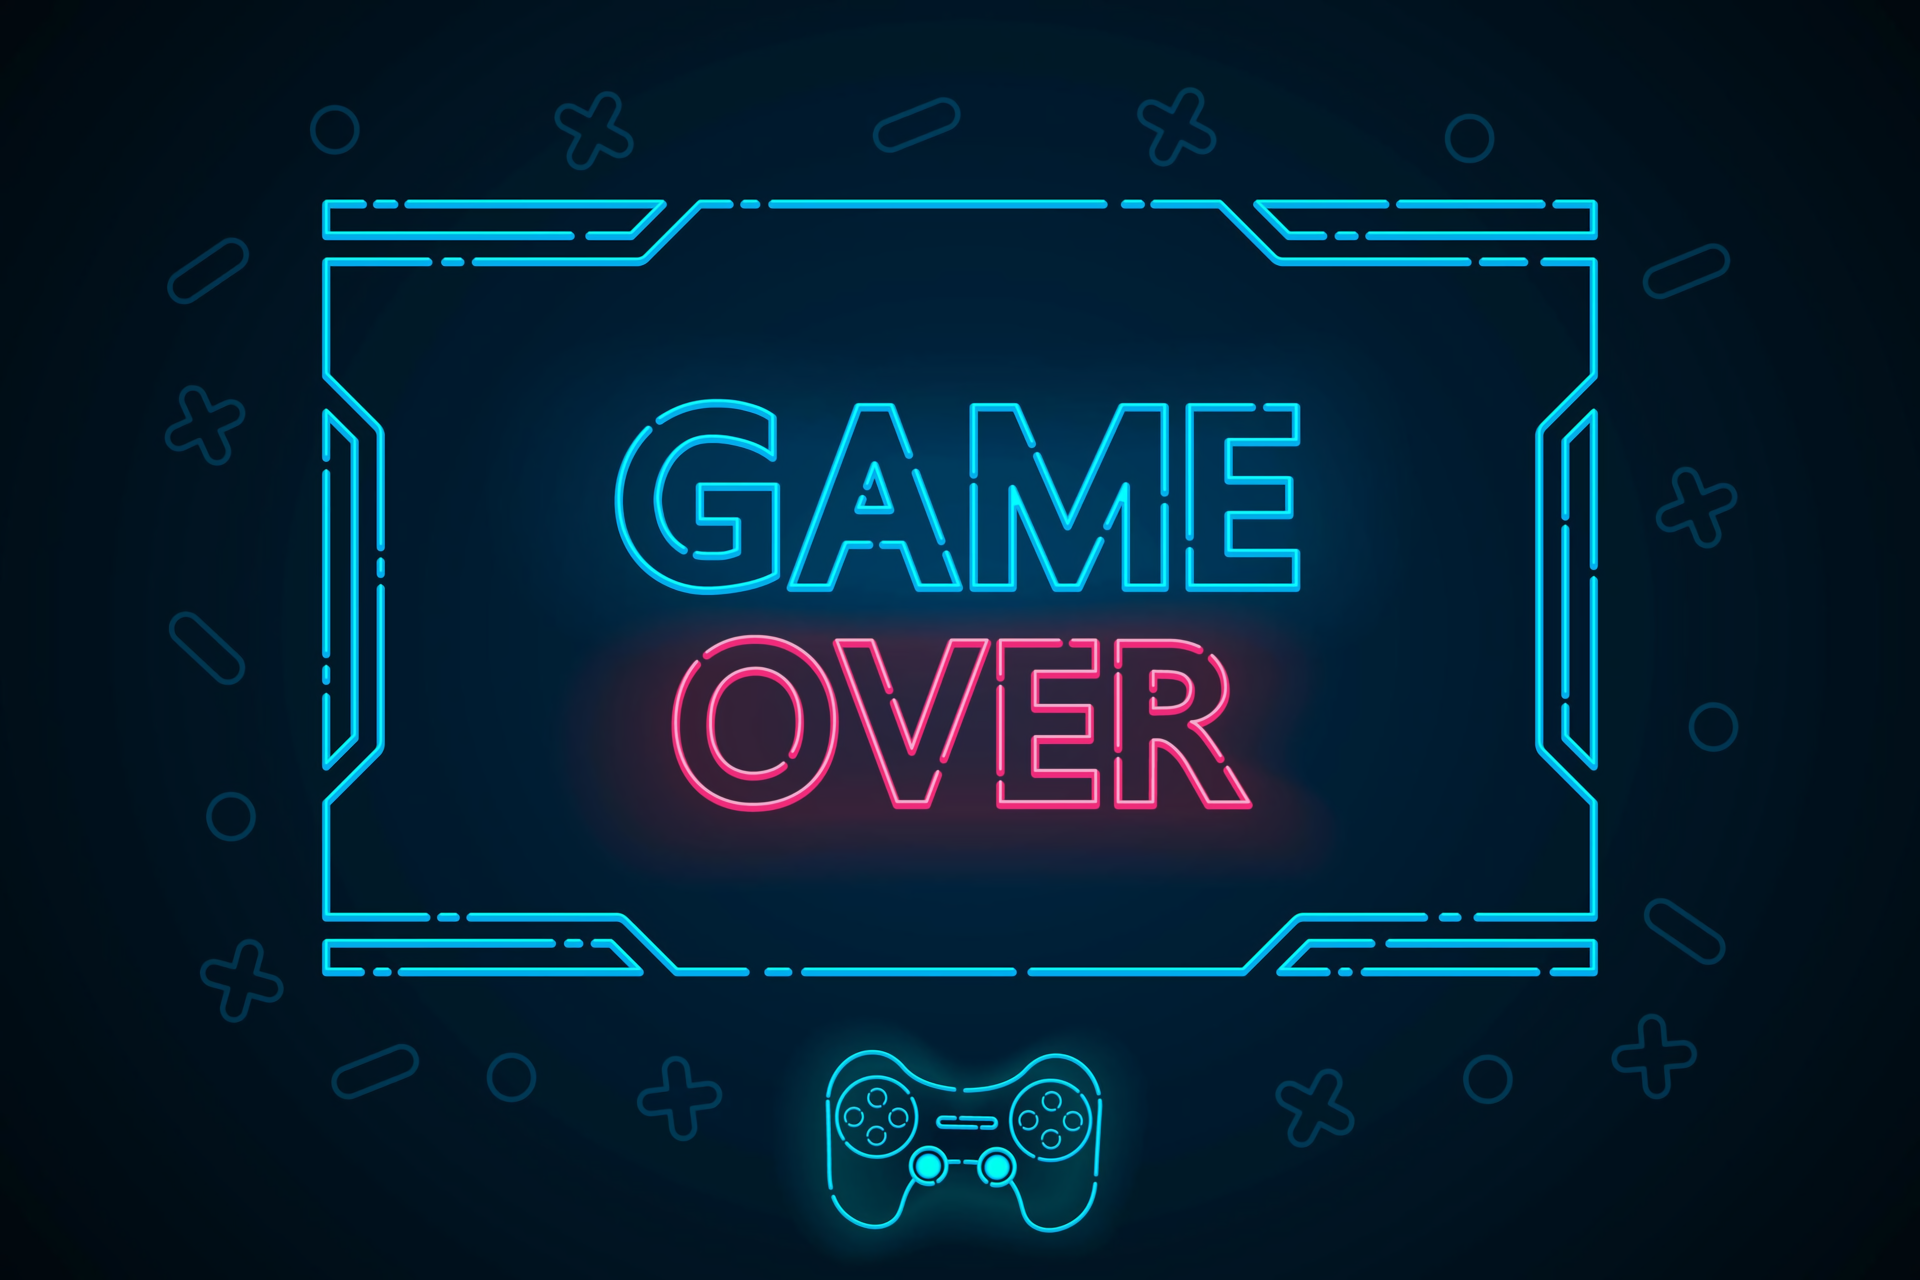 Nền tảng HD Game Over: Tham khảo nền tảng HD Game Over để có những giây phút thư giãn tuyệt vời với những game yêu thích. Sự hài lòng của bạn là ưu tiên hàng đầu của chúng tôi!